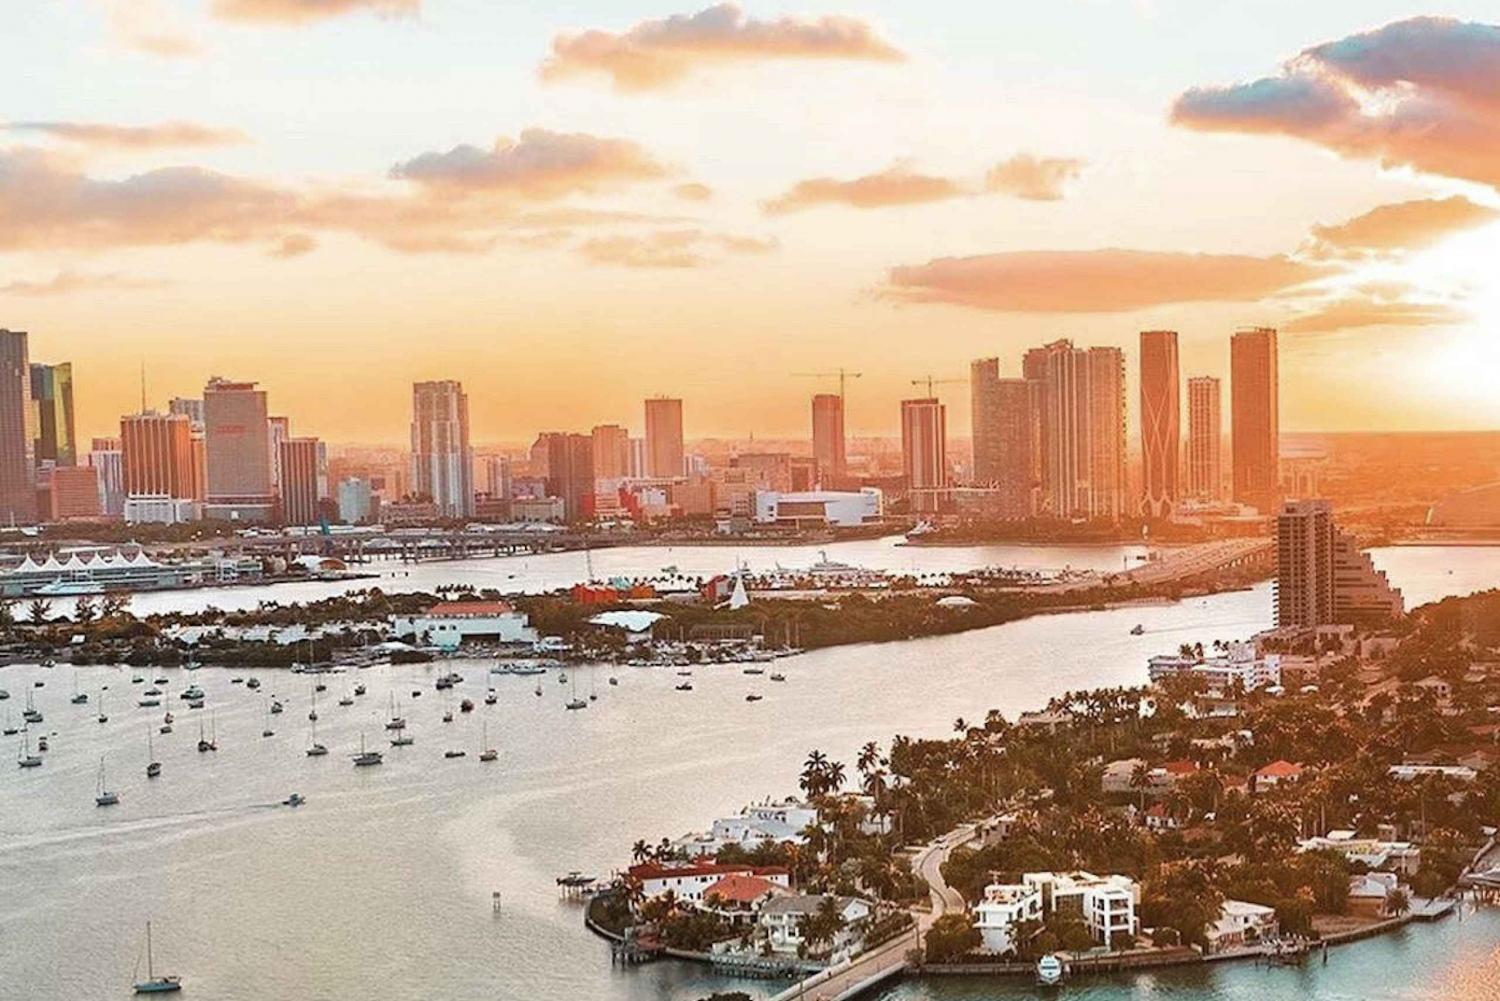 Miami: South Beach 30-Minute Scenic Flight